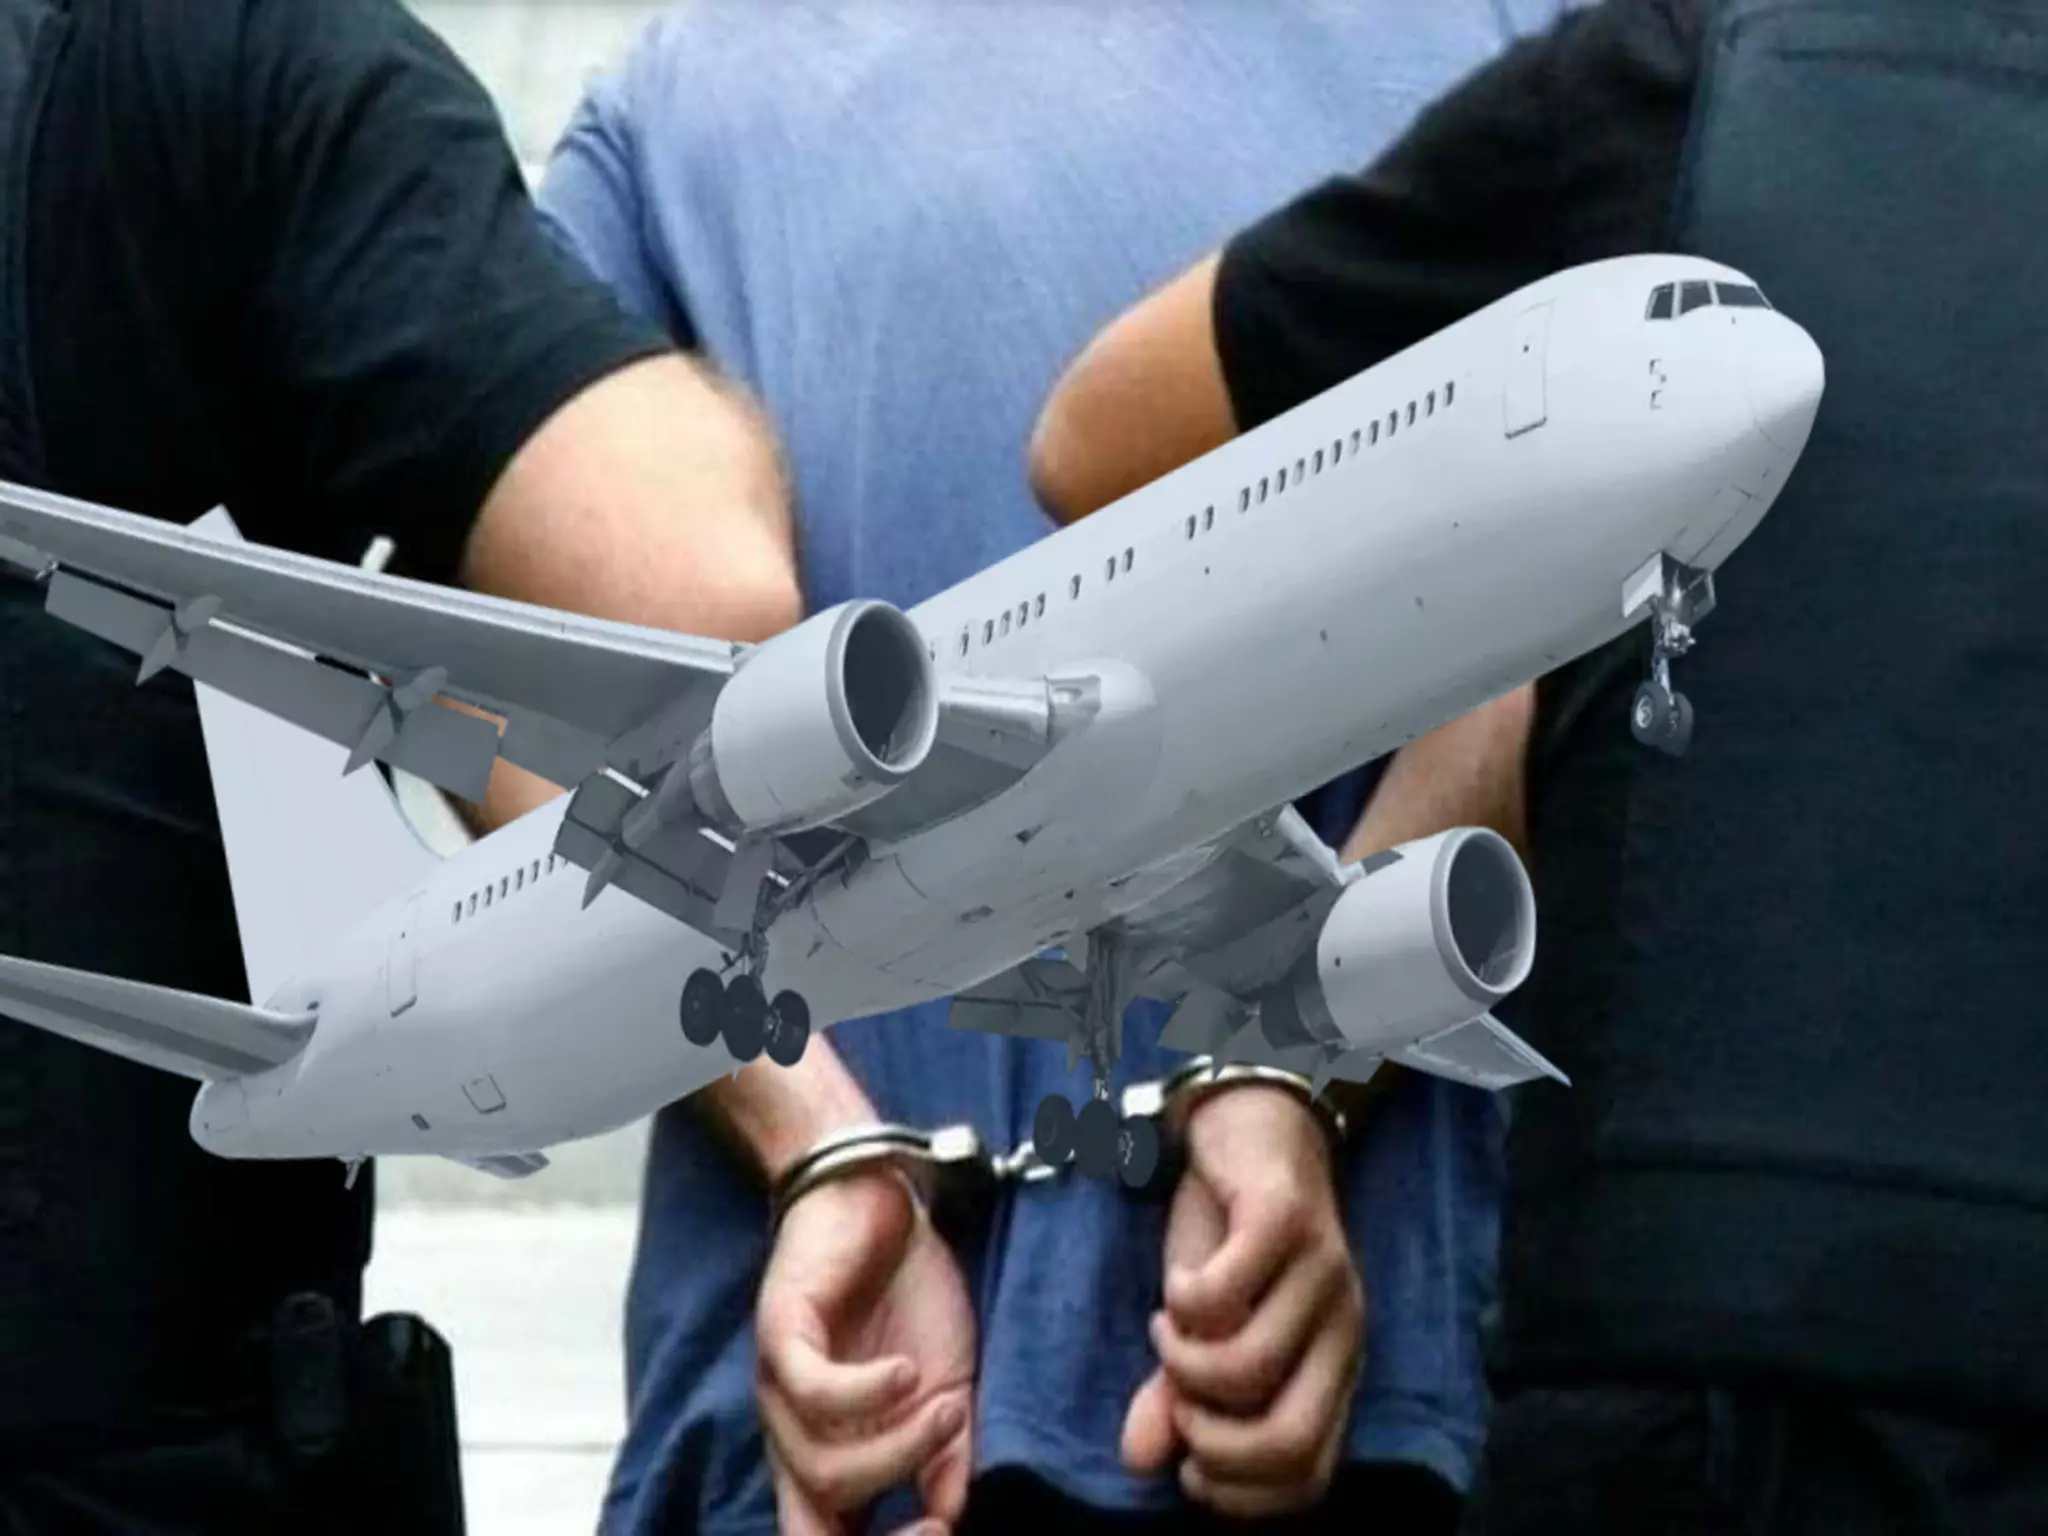 الشرطة تقبض على مسافر في مطار دبي وتغريمه 10 آلاف درهم بسبب محتويات حقائبه